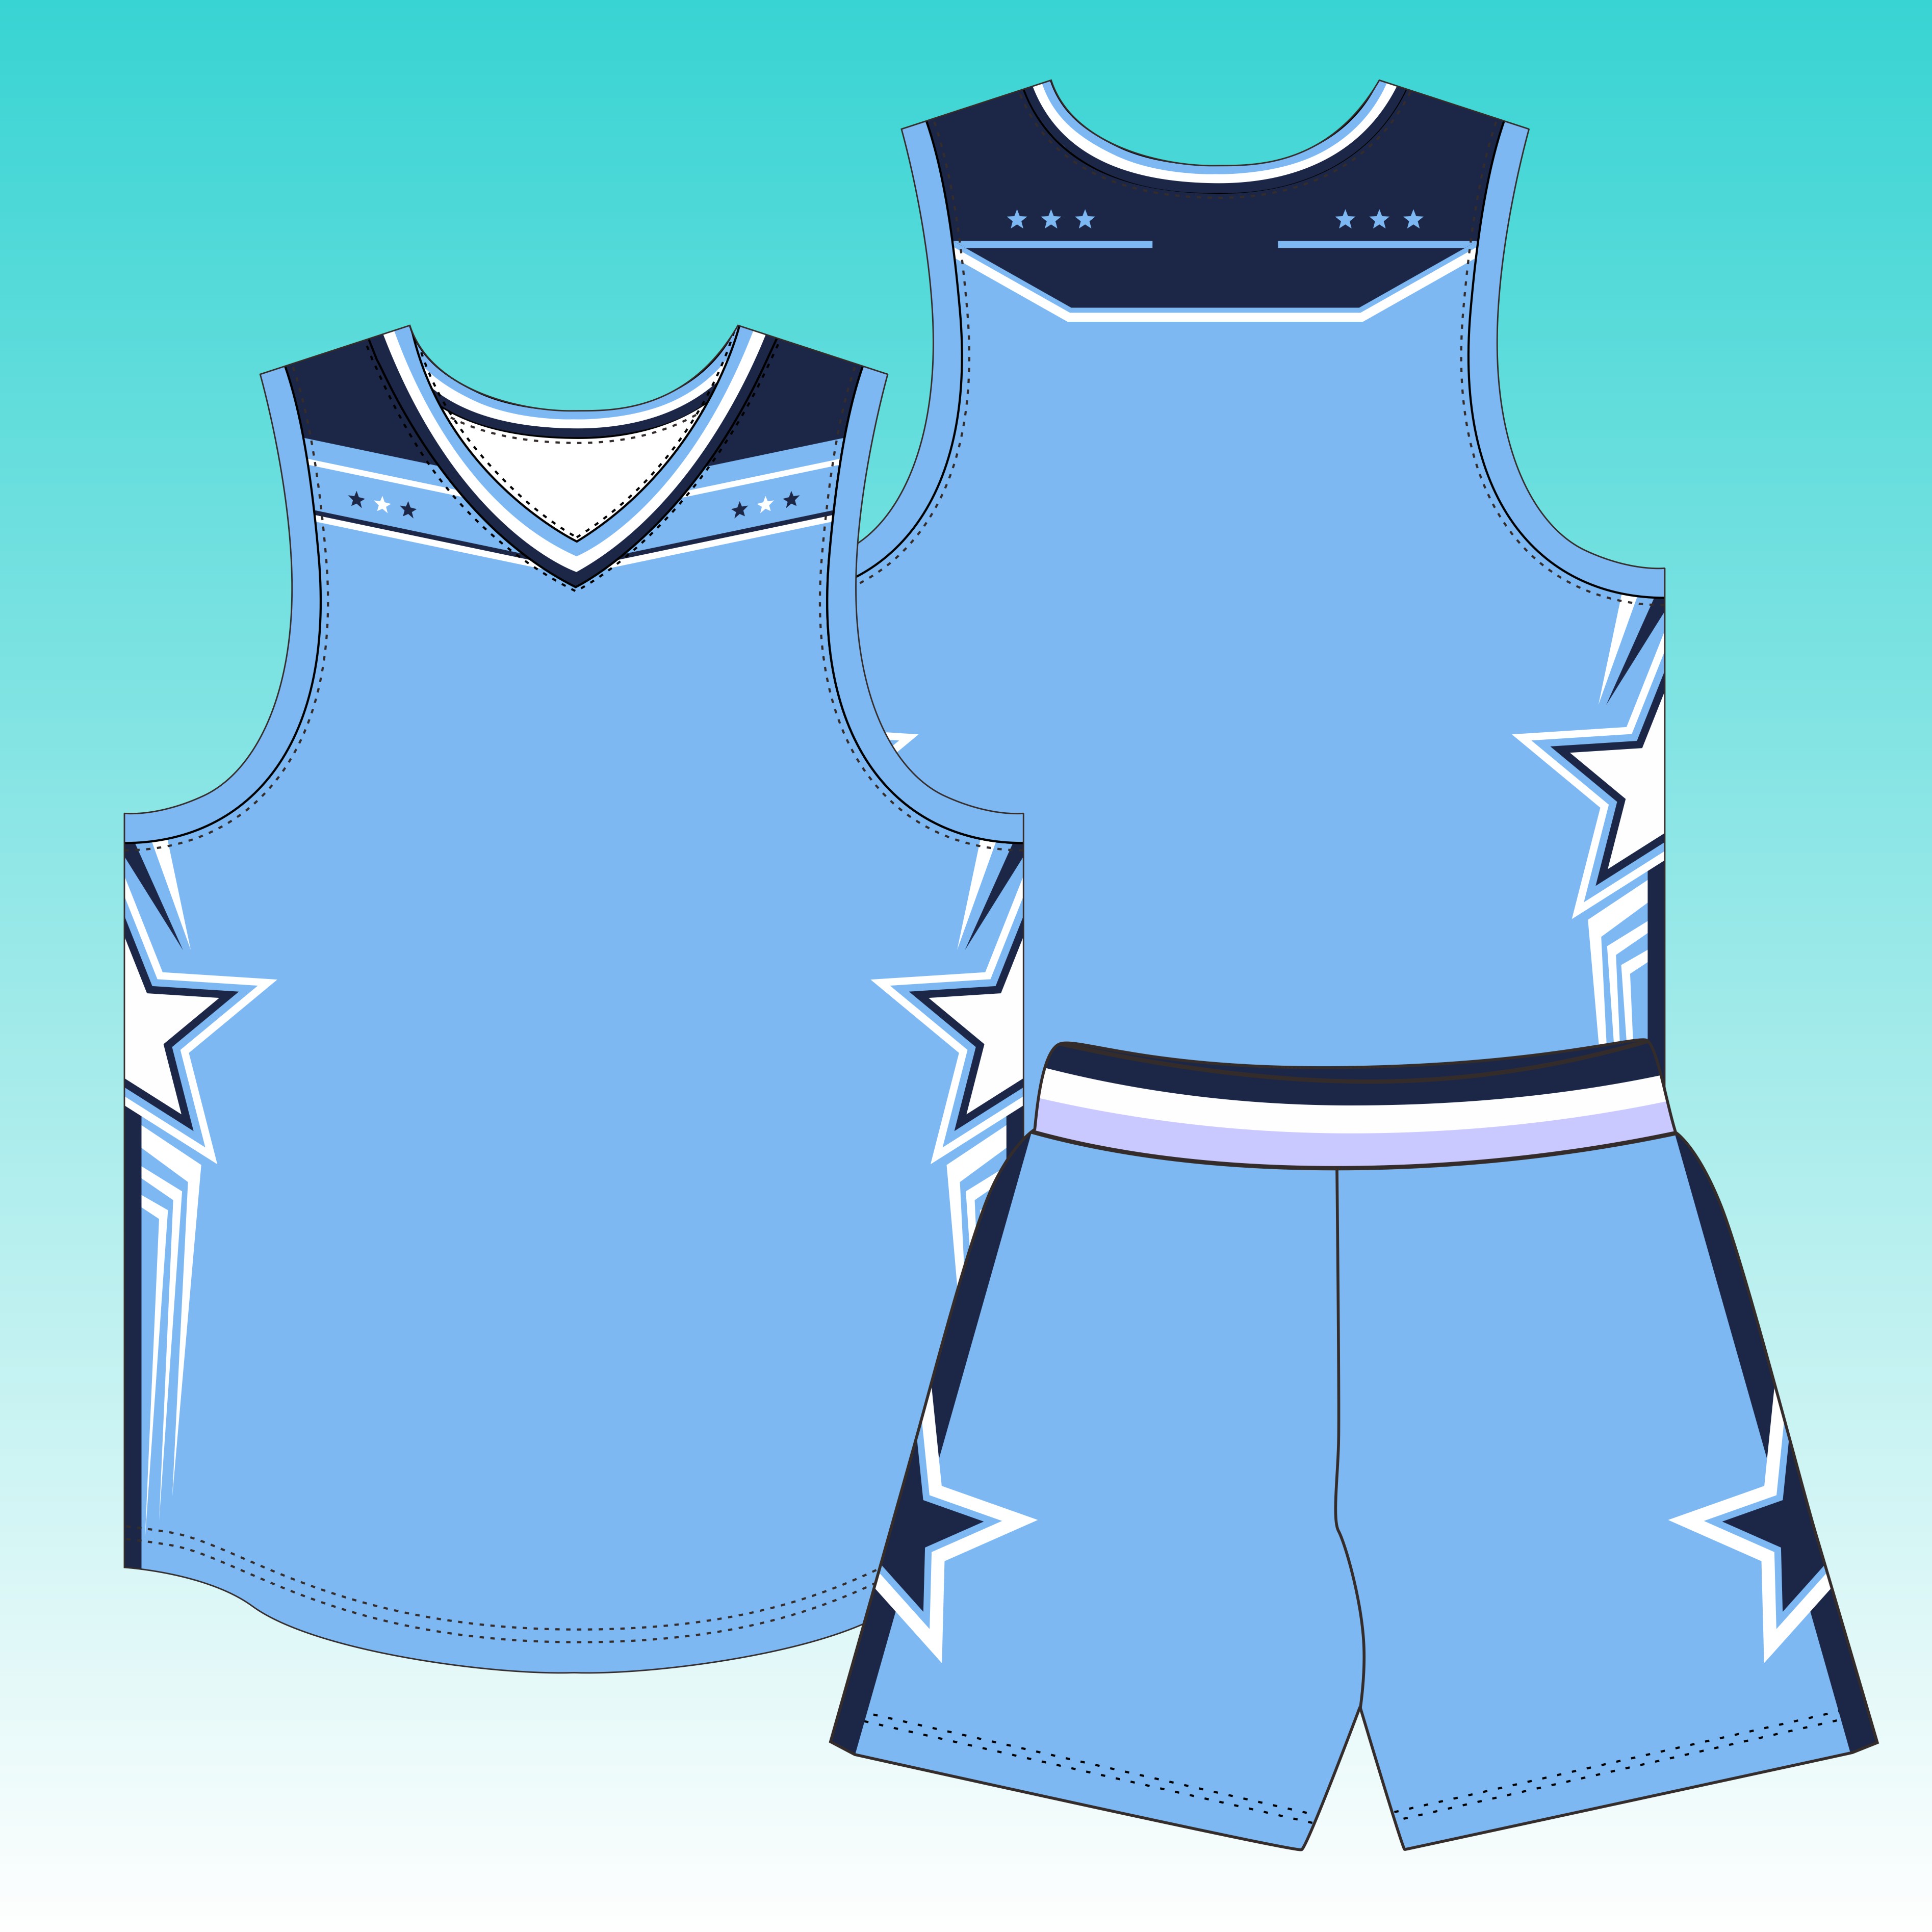 全身定制美式篮球服套装定制男学生比赛训练队服NBA 面料球衣订制